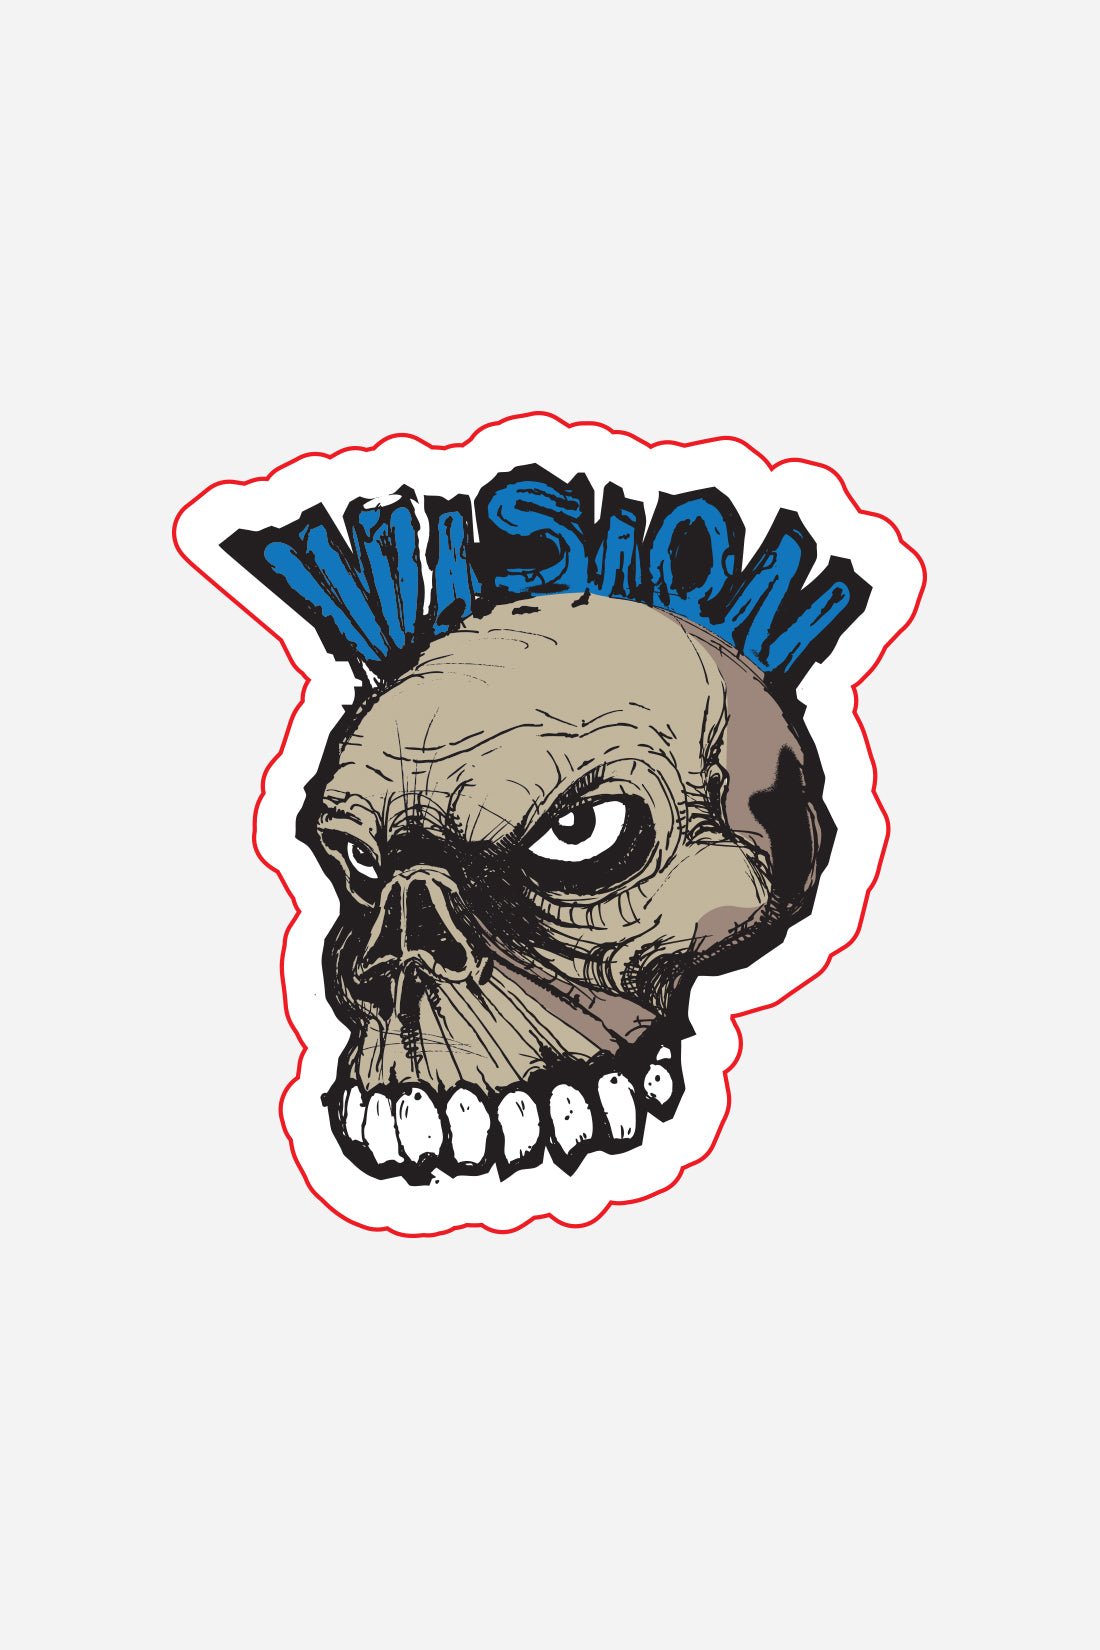 Vision Street Wear Skateboard Stickers